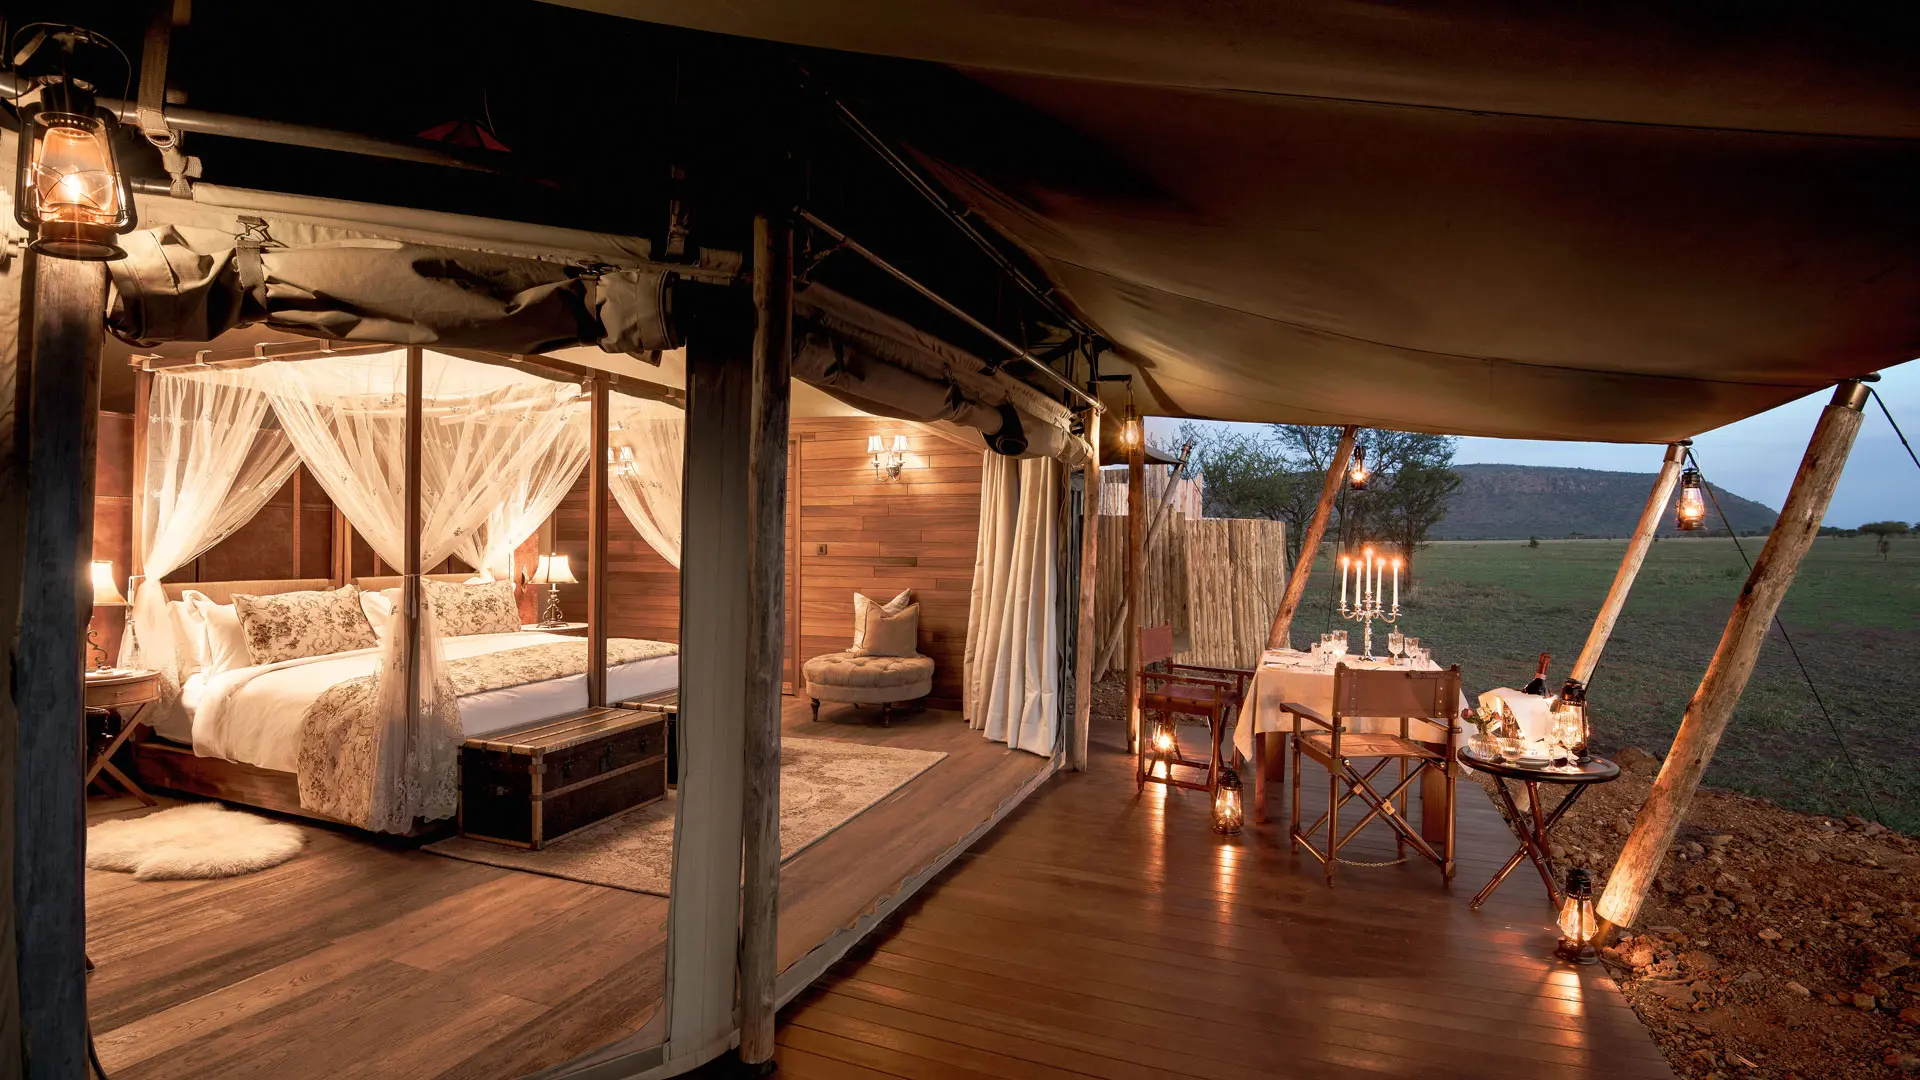 Hotel review Accommodation' - One Nature Nyaruswiga Serengeti - 12